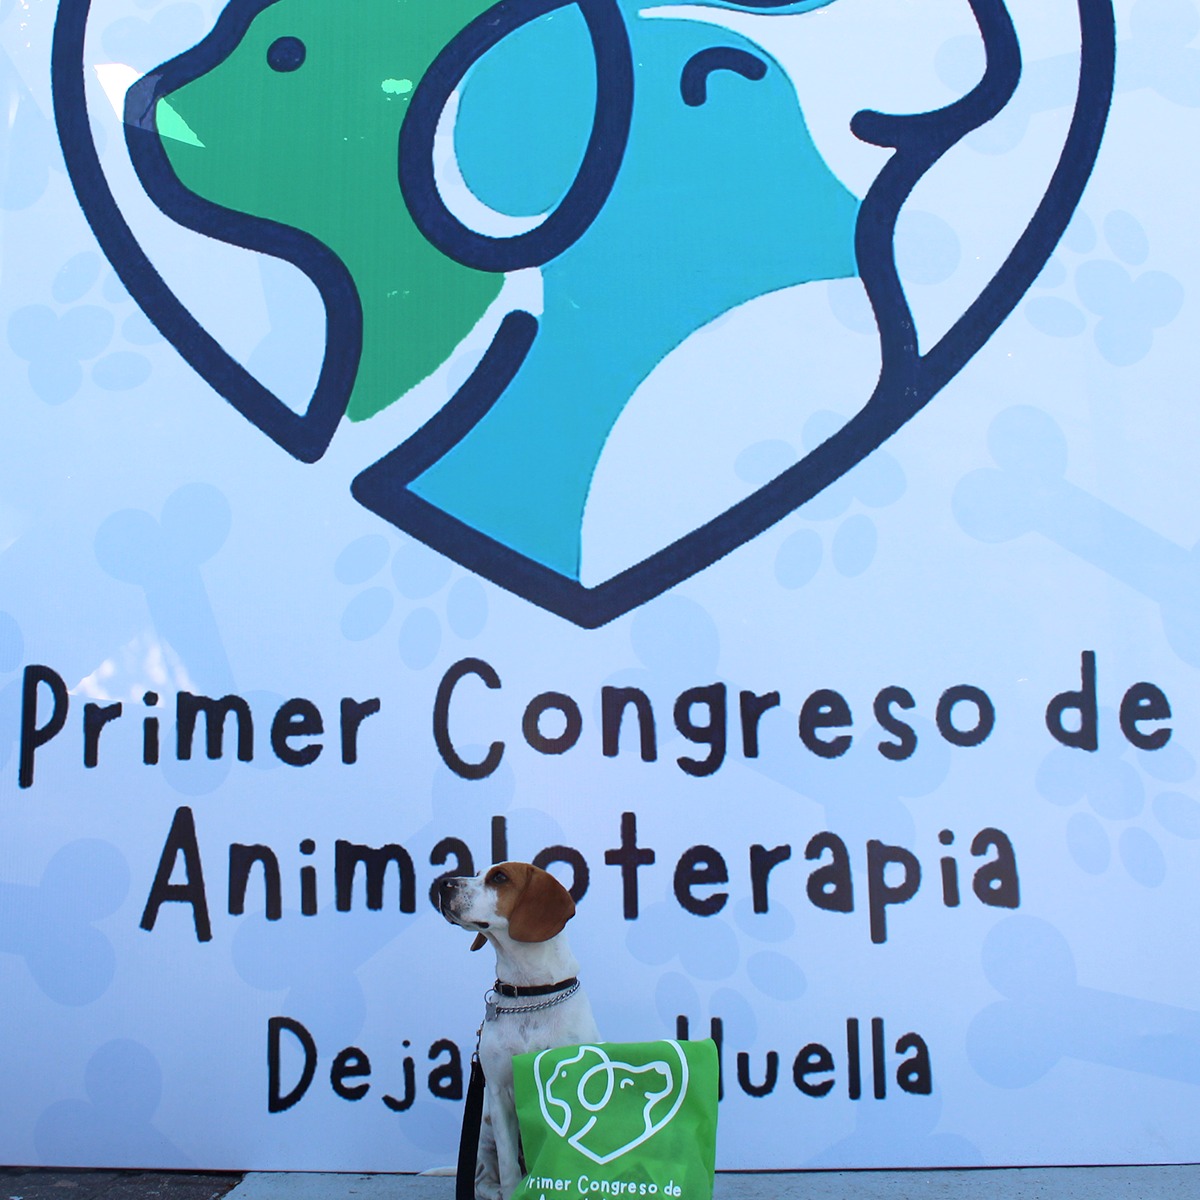 PRIMER CONGRESO DE ANIMALOTERAPIA: DEJANDO HUELLA